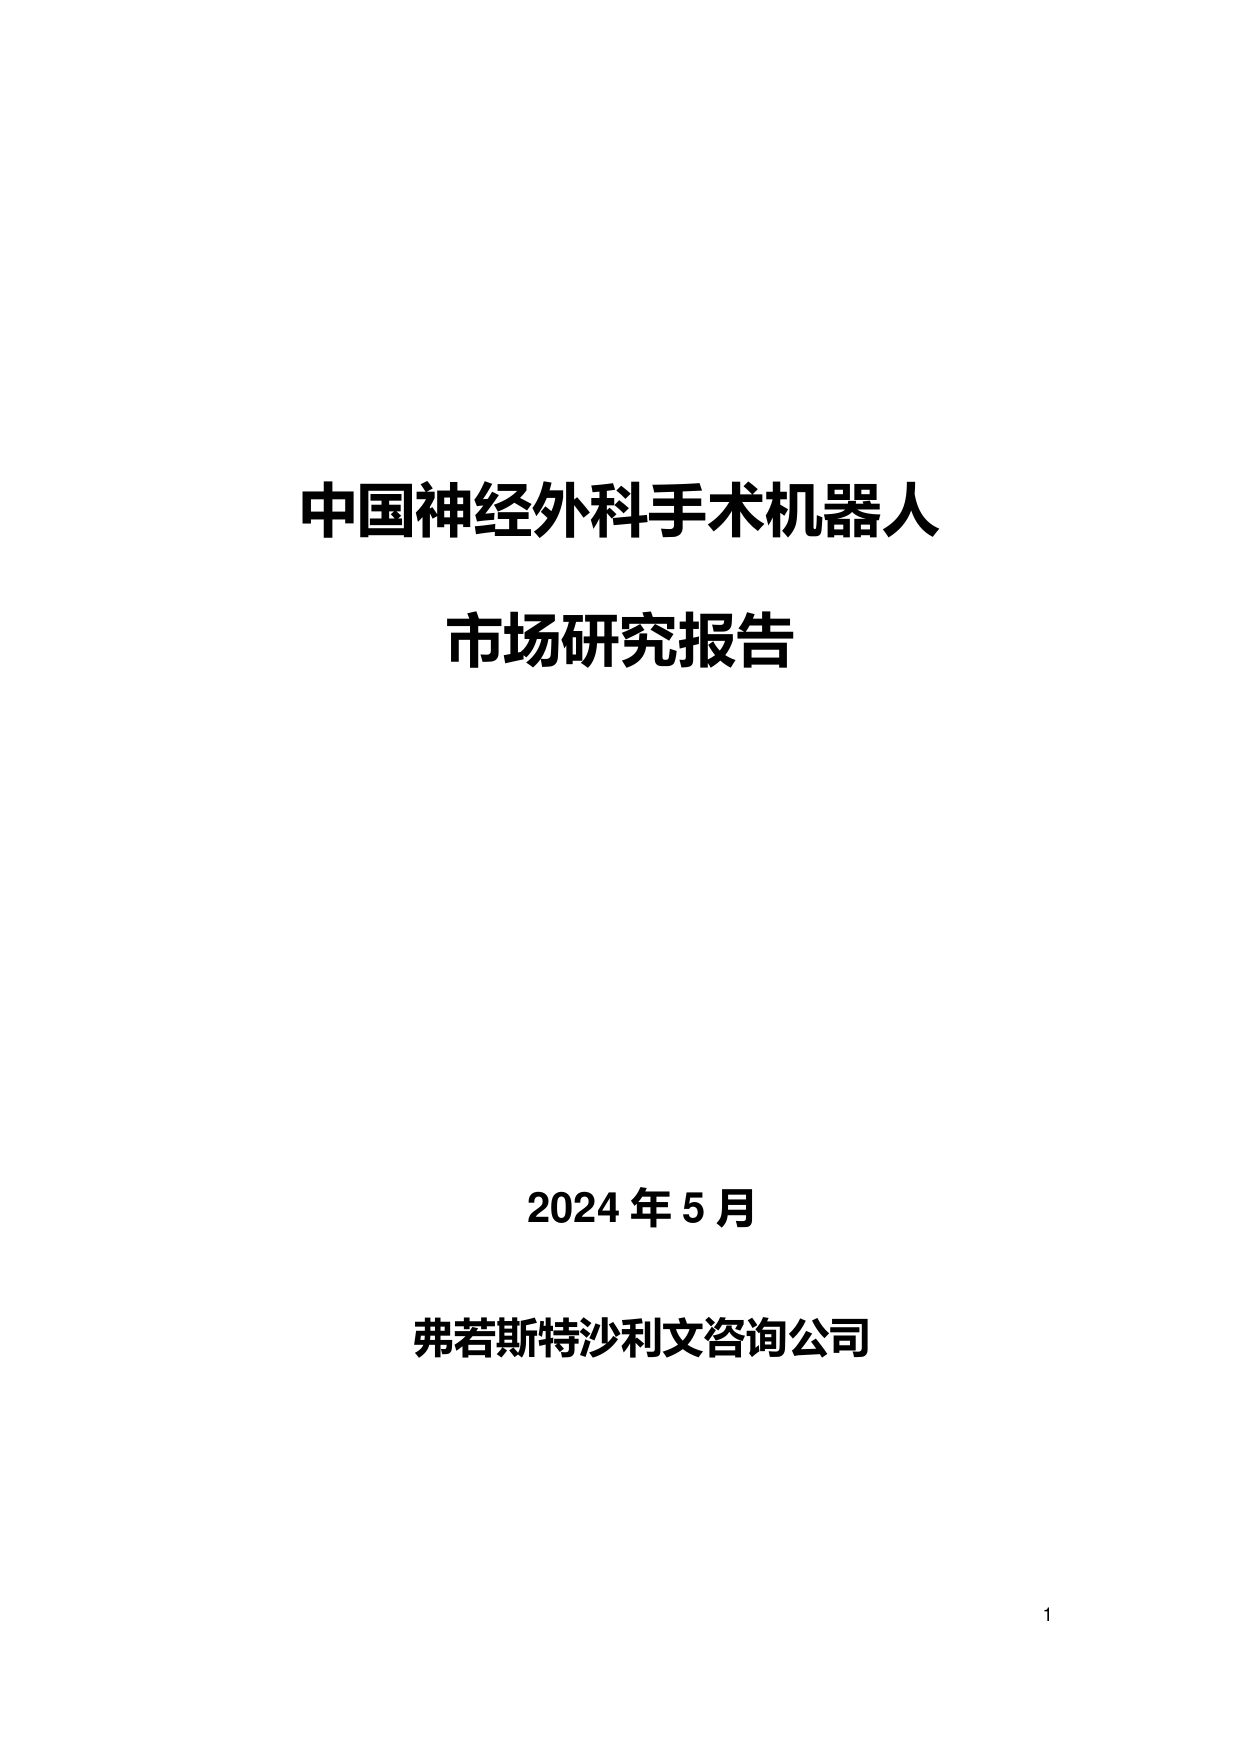 2024中国神经外科手术机器人市场研究报告-沙利文-202405.pdf